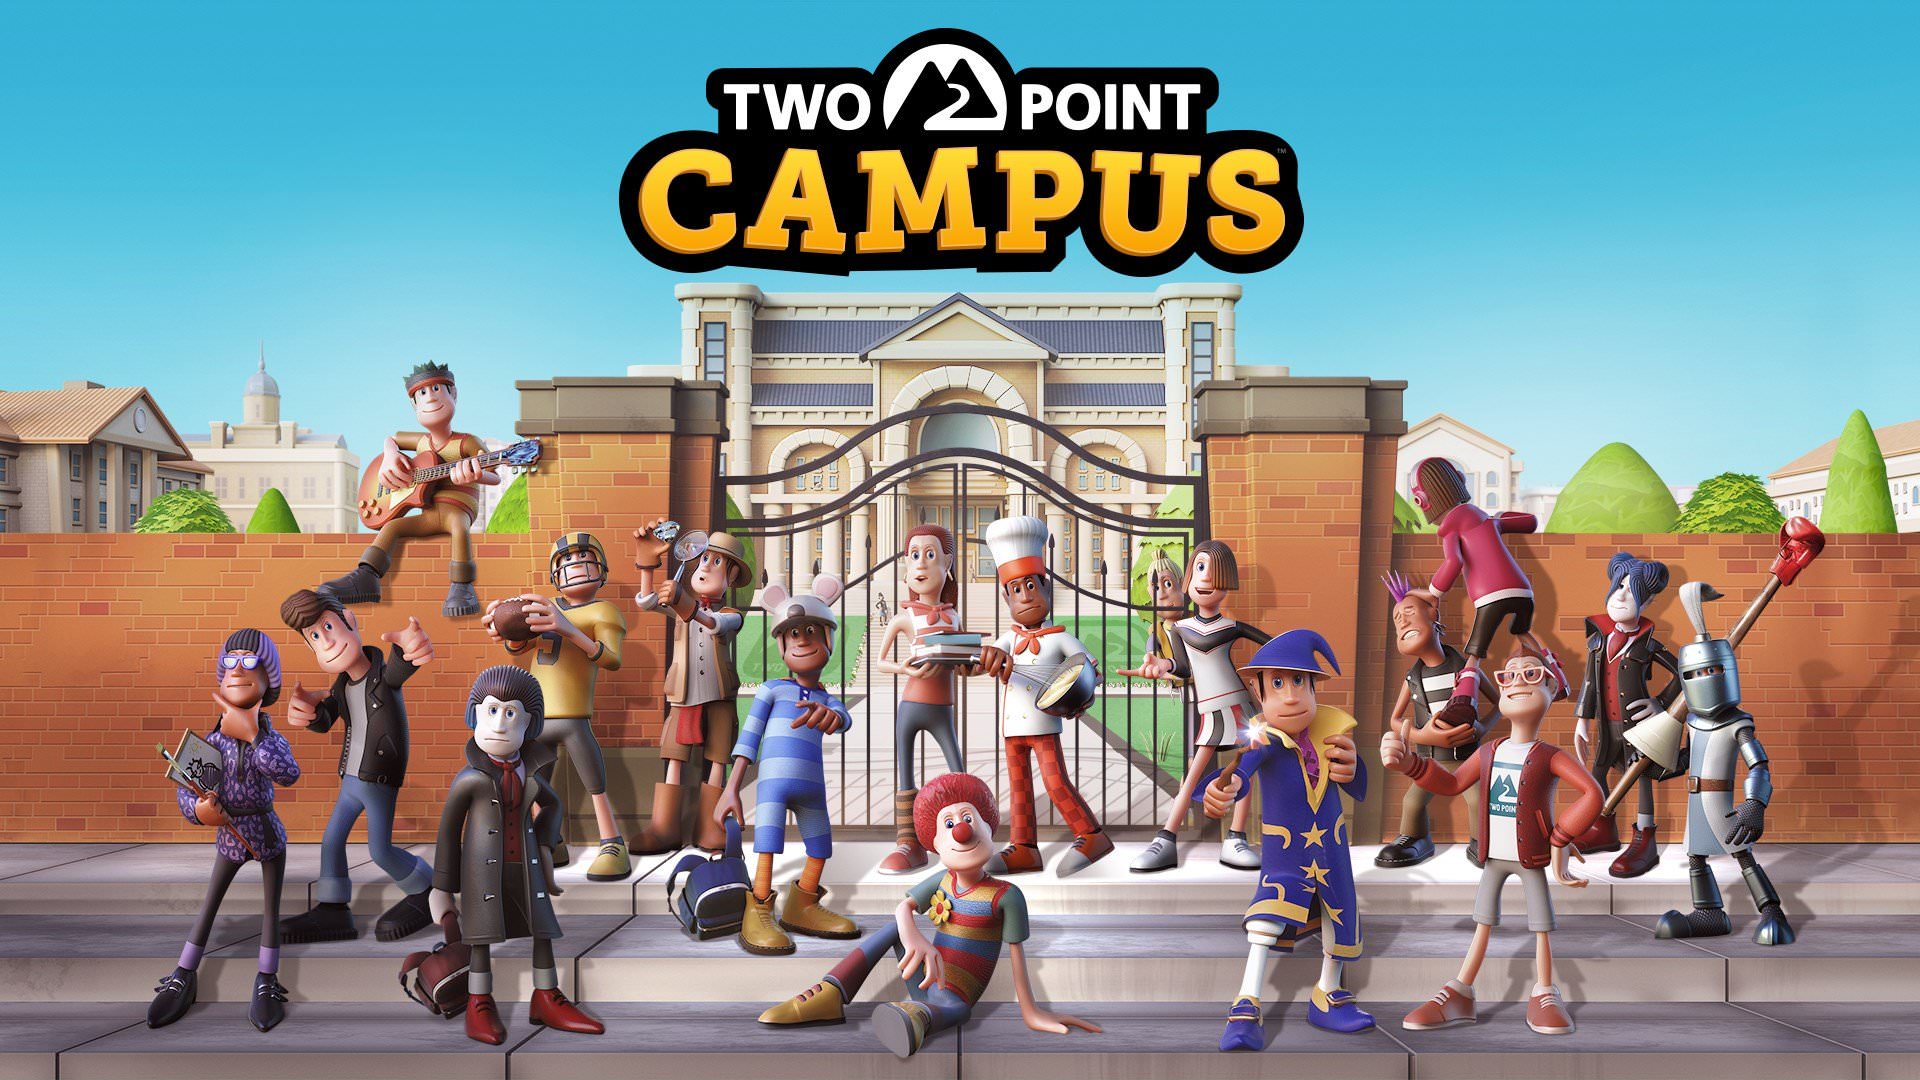 تریلر زمان عرضه بازی Two Point Campus با محوریت نمایش فعالیت های مختلف